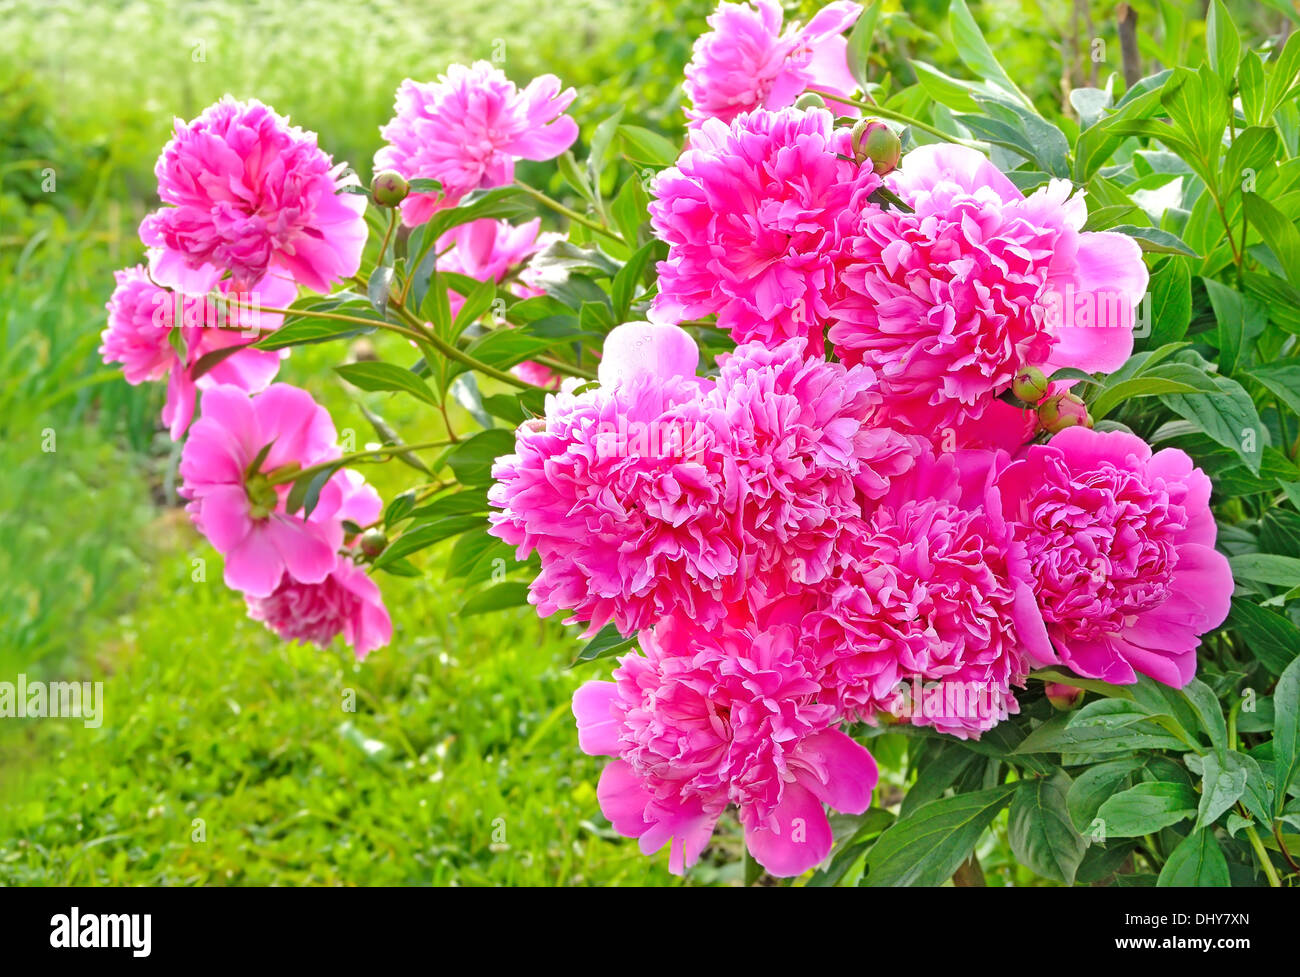 Pink peonies in the garden Stock Photo